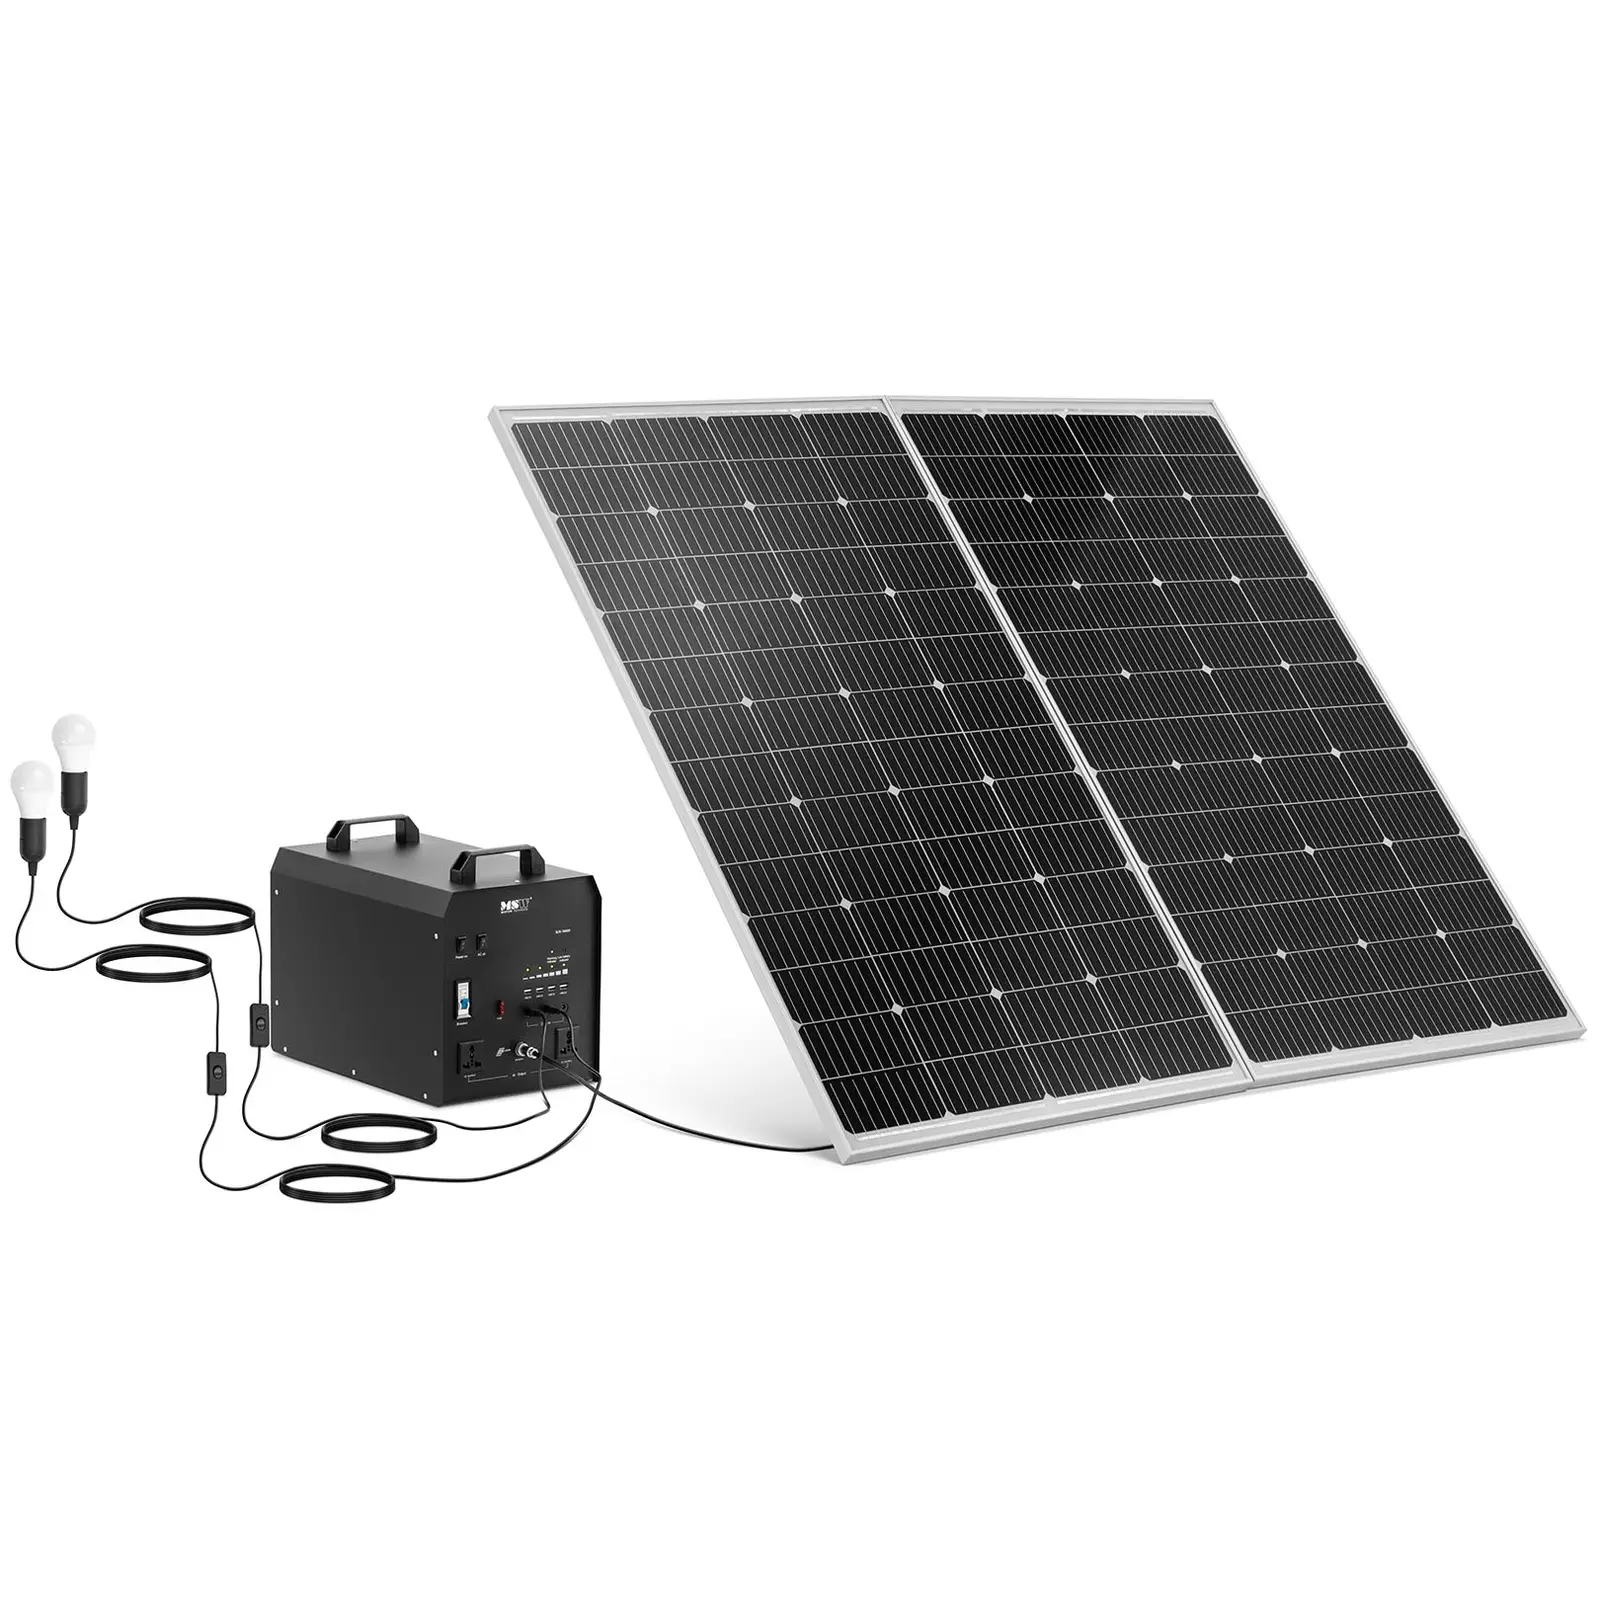 Groupe électrogène solaire avec panneau solaire et onduleur - 1800 W - 5 / 12 /230 V - 3 lumières LED